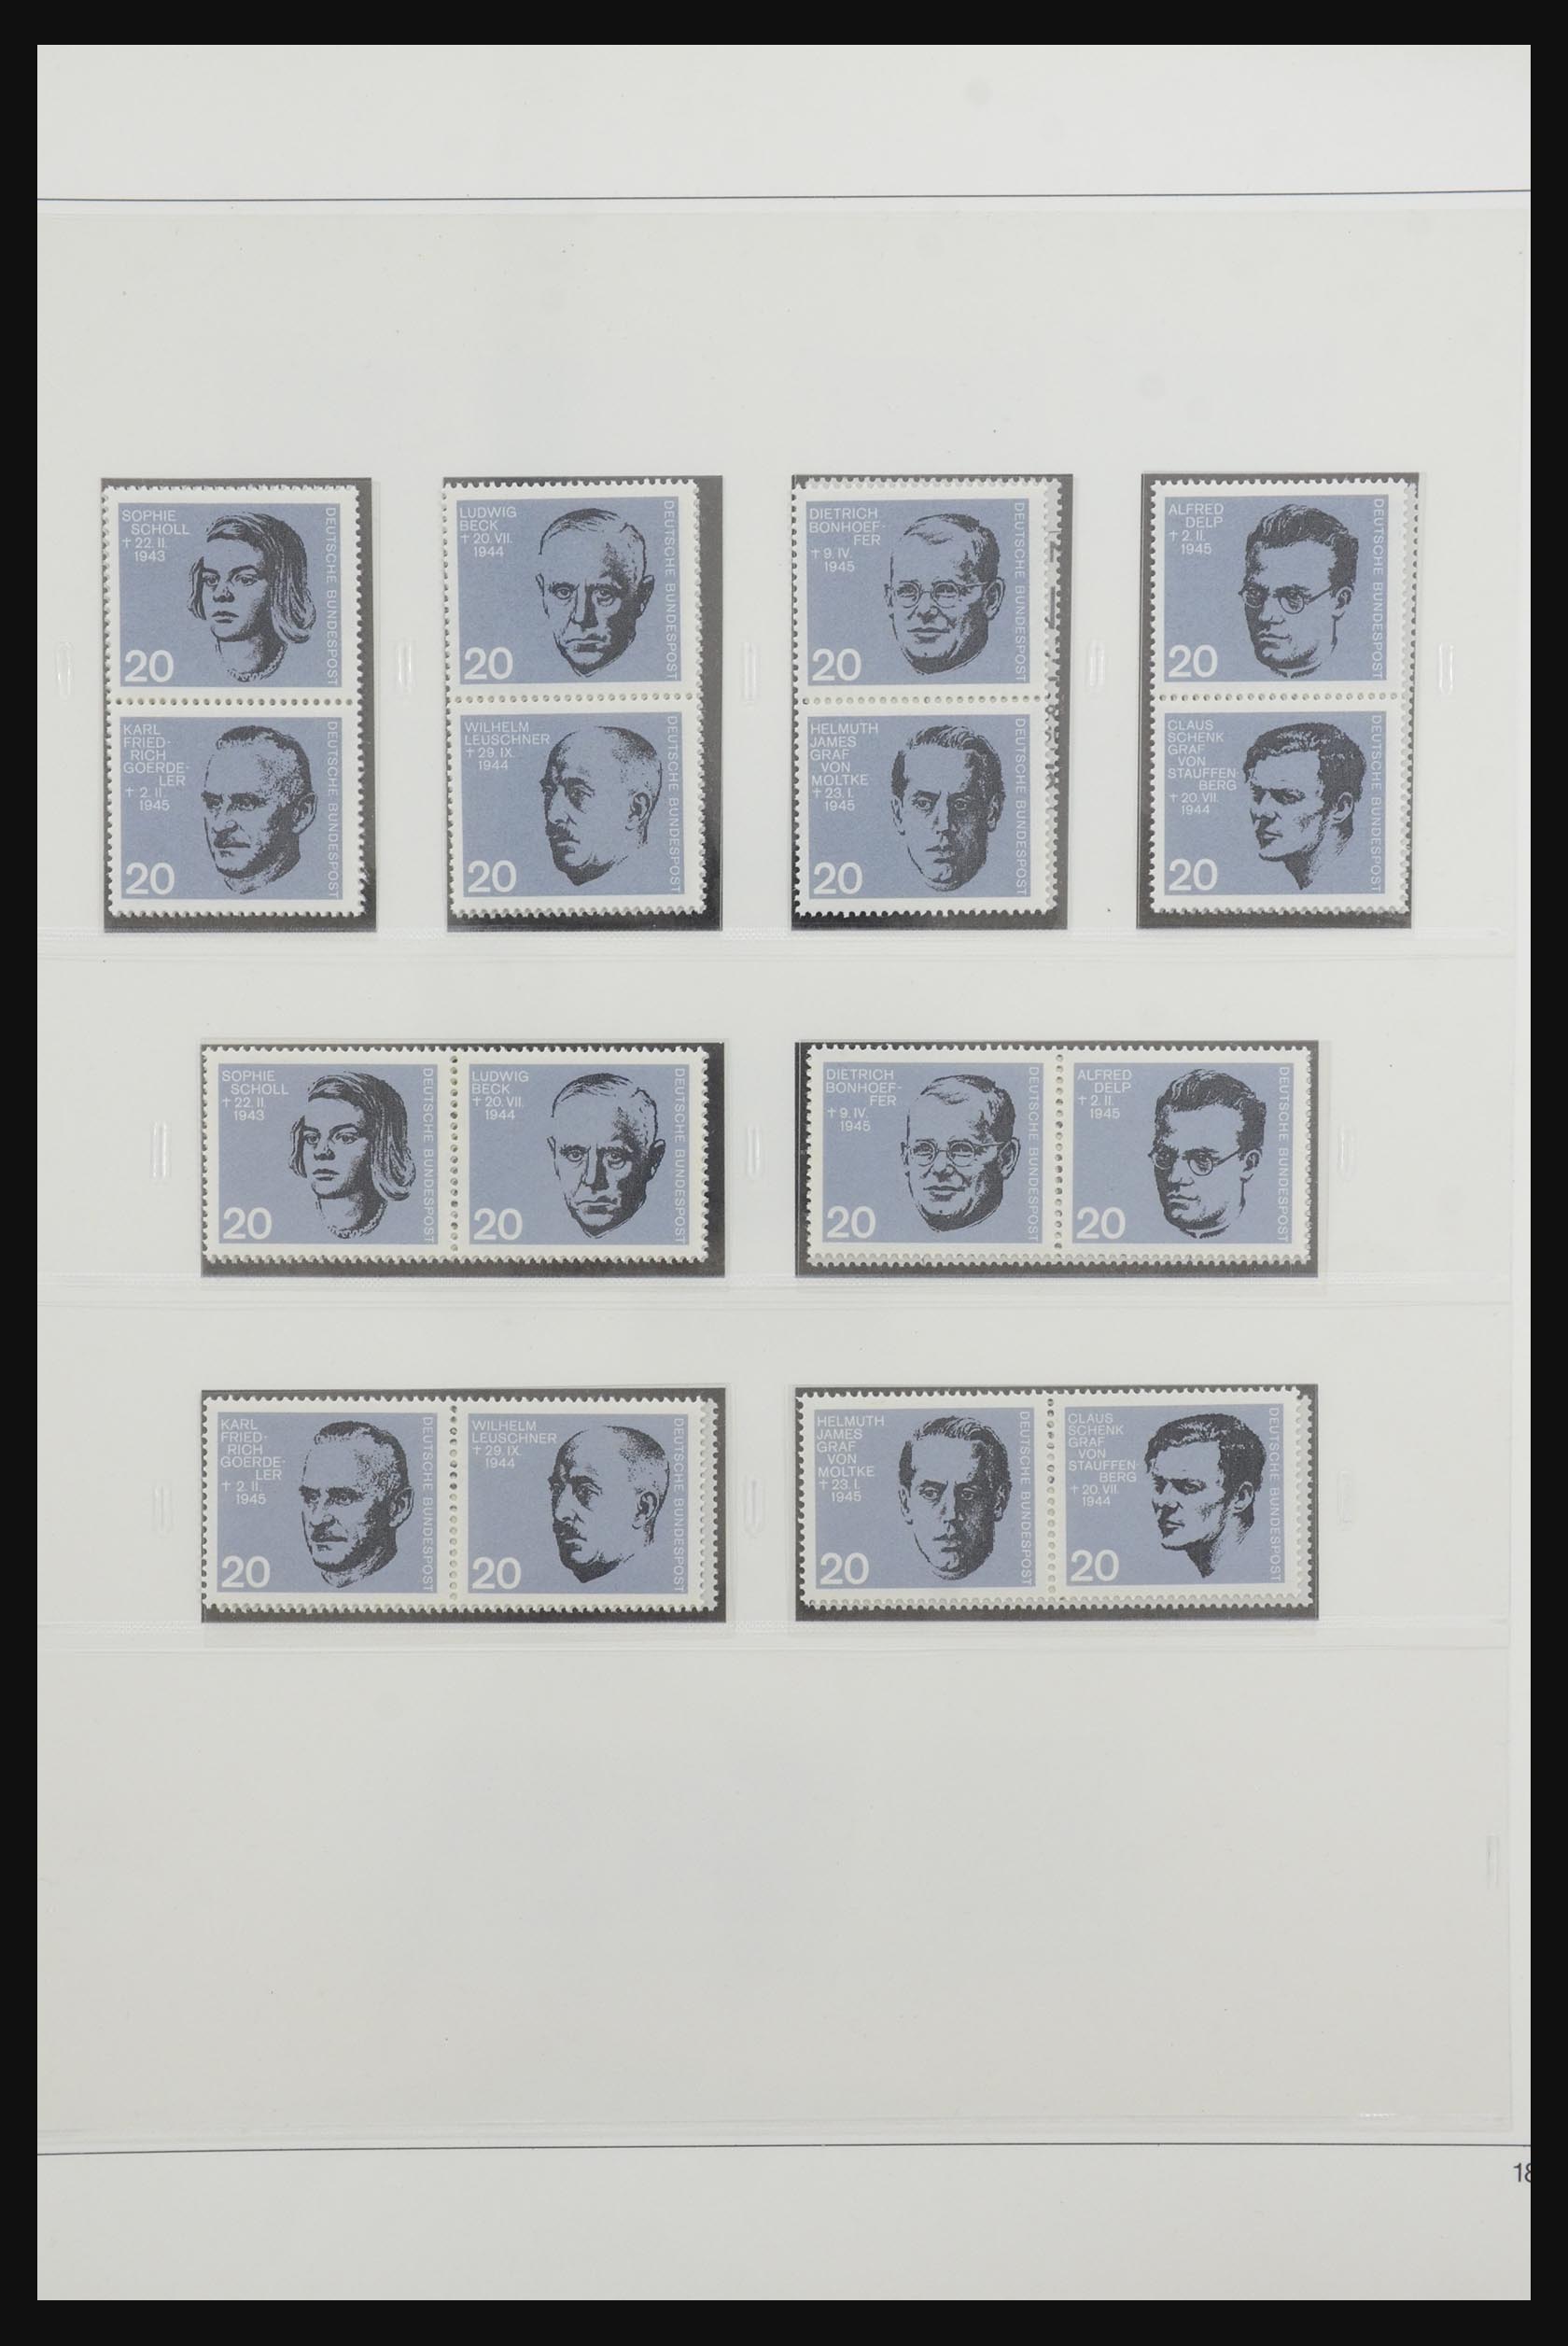 31842 023 - 31842 Bundespost combinaties 1951-2003.